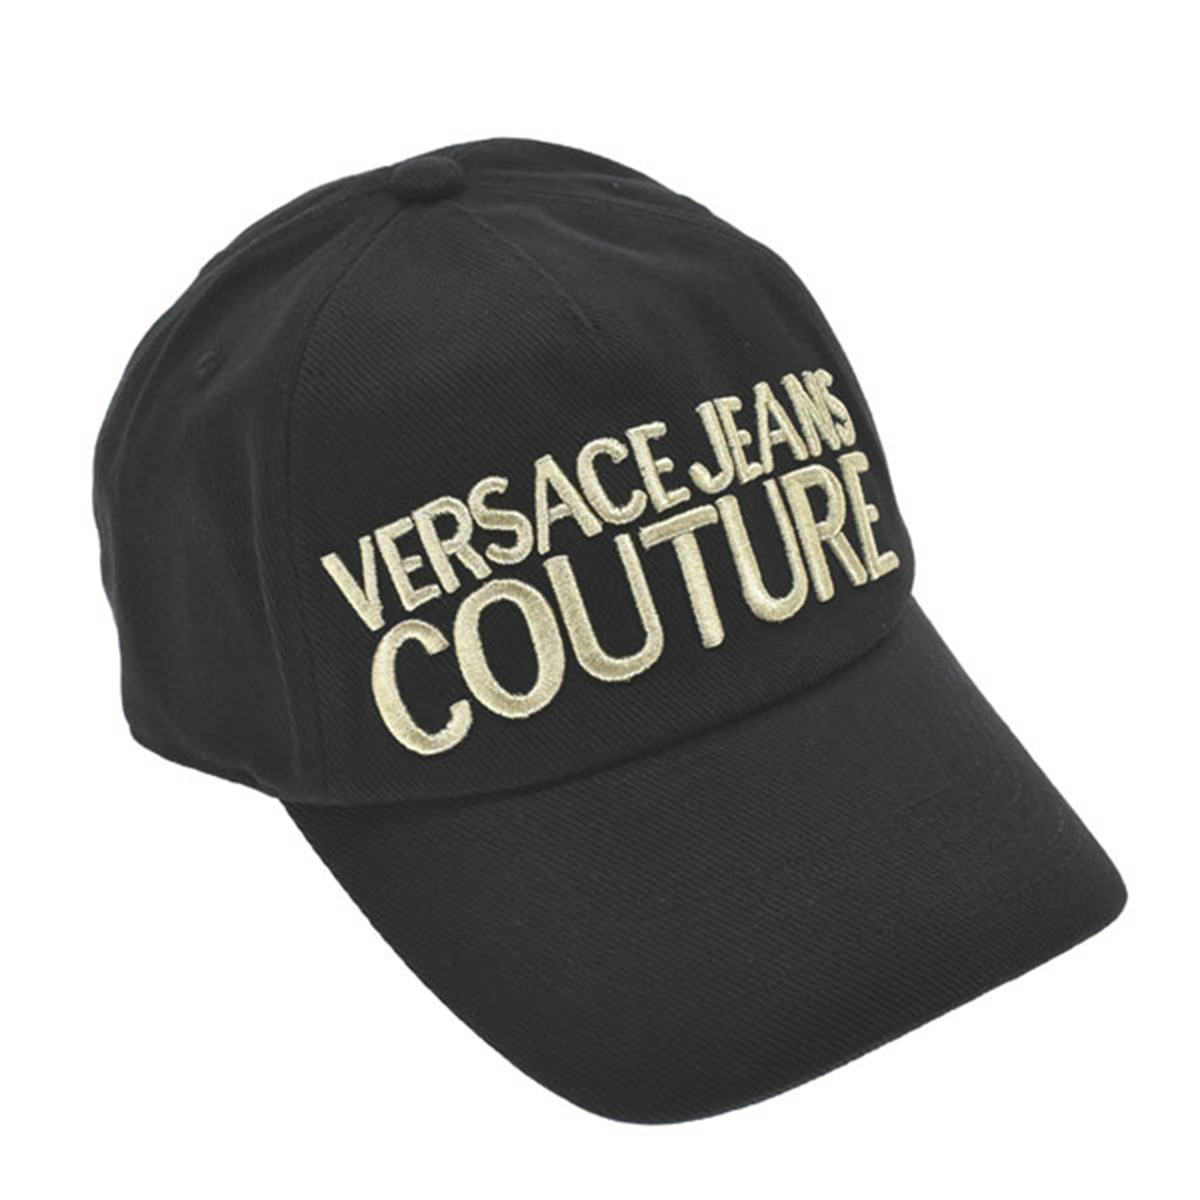 ヴェルサーチェ ジーンズ クチュール VERSACE JEANS COUTURE 帽子 キャップ 72YAZK10 G89 ベースボールキャップ BASEBALL CAP WITH PENCES CIRCONFERENZA 58 CM BLACK/GOLD ブラック+ゴールドのサムネイル